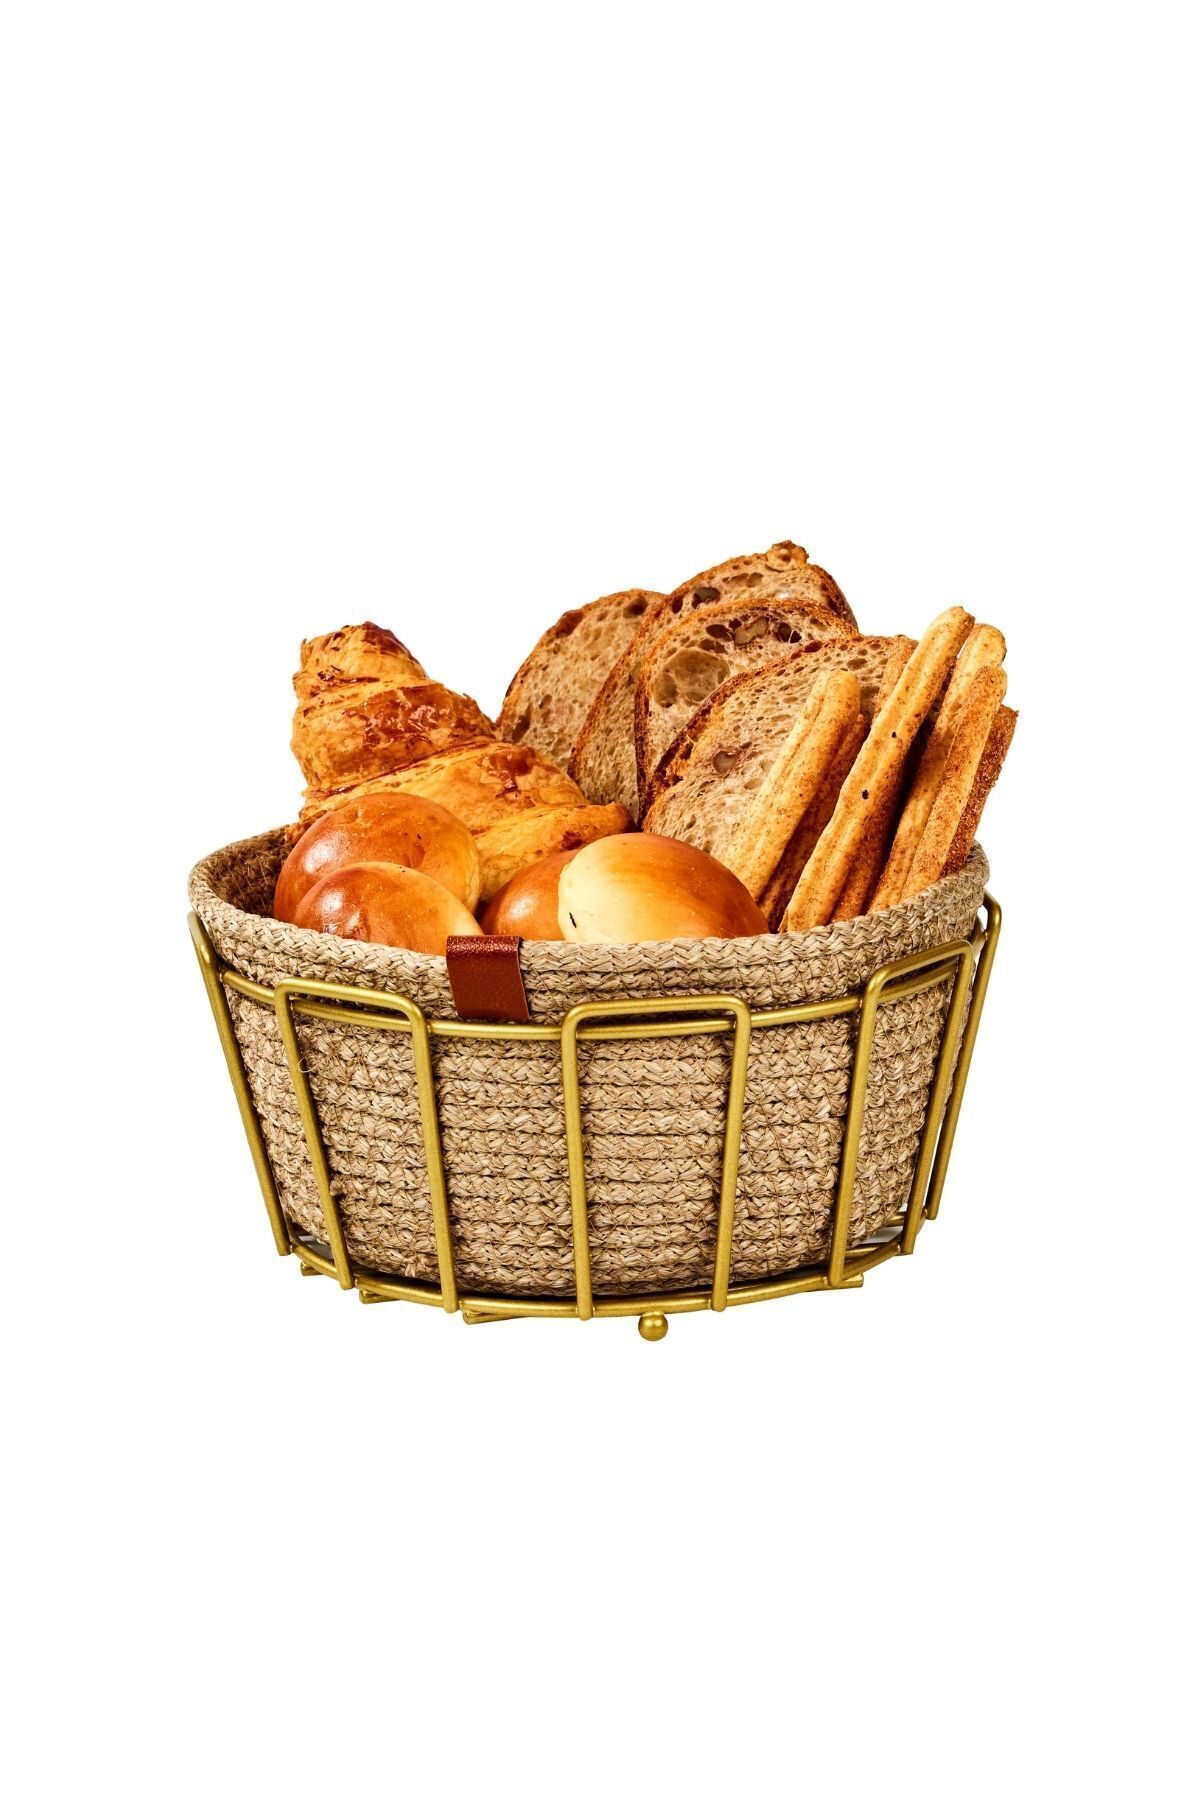 Edora Home Gold Oval Köşeli Ekmek Sepeti Şık, Ekmeklik Hasır Örmeli Makrome, Çeyiz - Çok Amaçlı Metal Paslanmaz